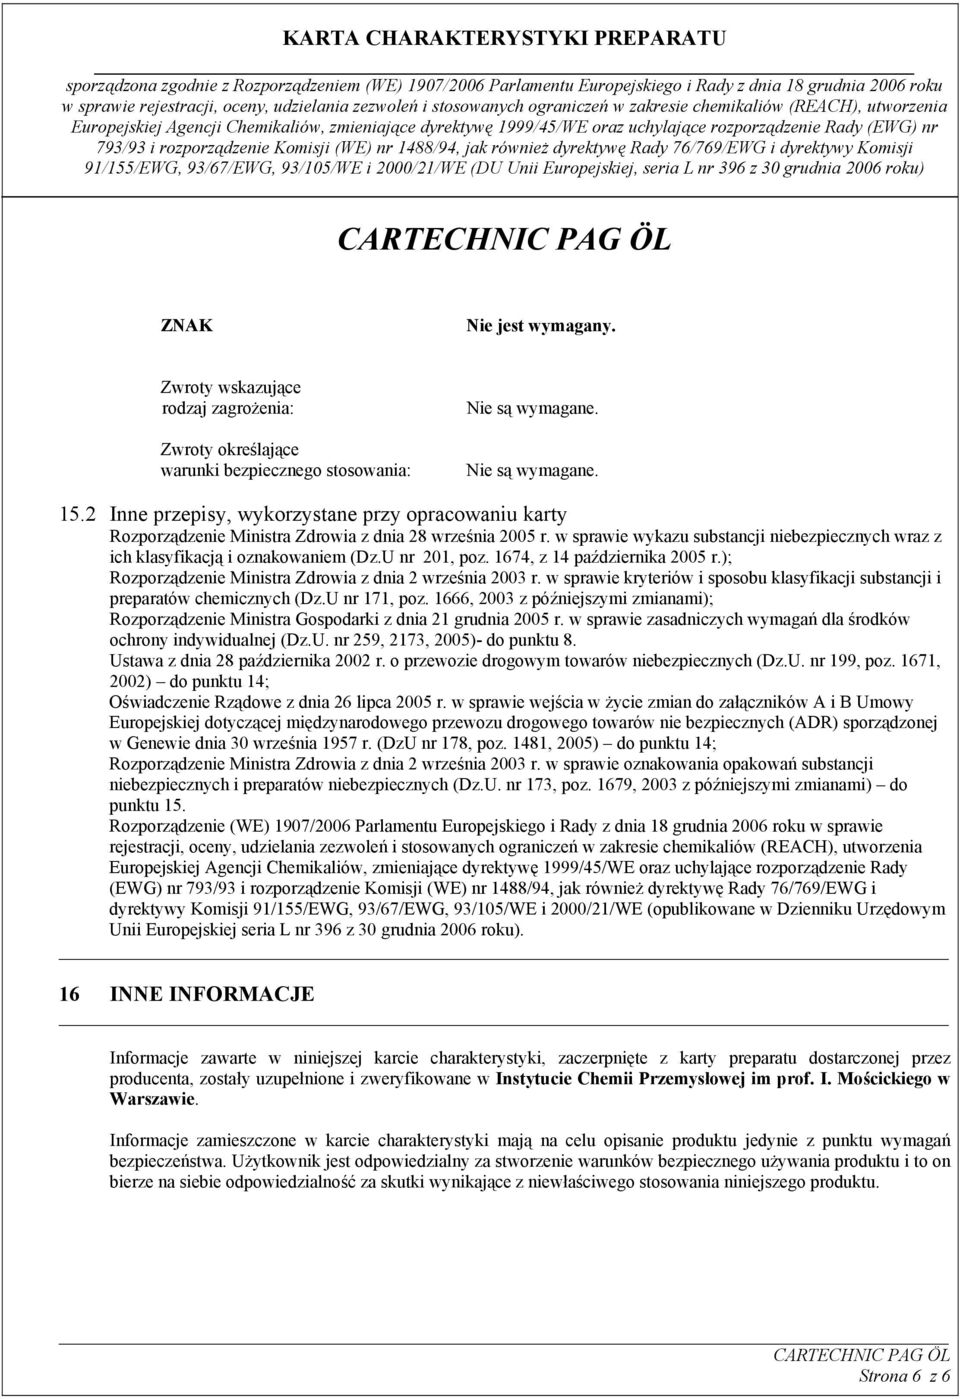 U nr 201, poz. 1674, z 14 października 2005 r.); Rozporządzenie Ministra Zdrowia z dnia 2 września 2003 r. w sprawie kryteriów i sposobu klasyfikacji substancji i preparatów chemicznych (Dz.